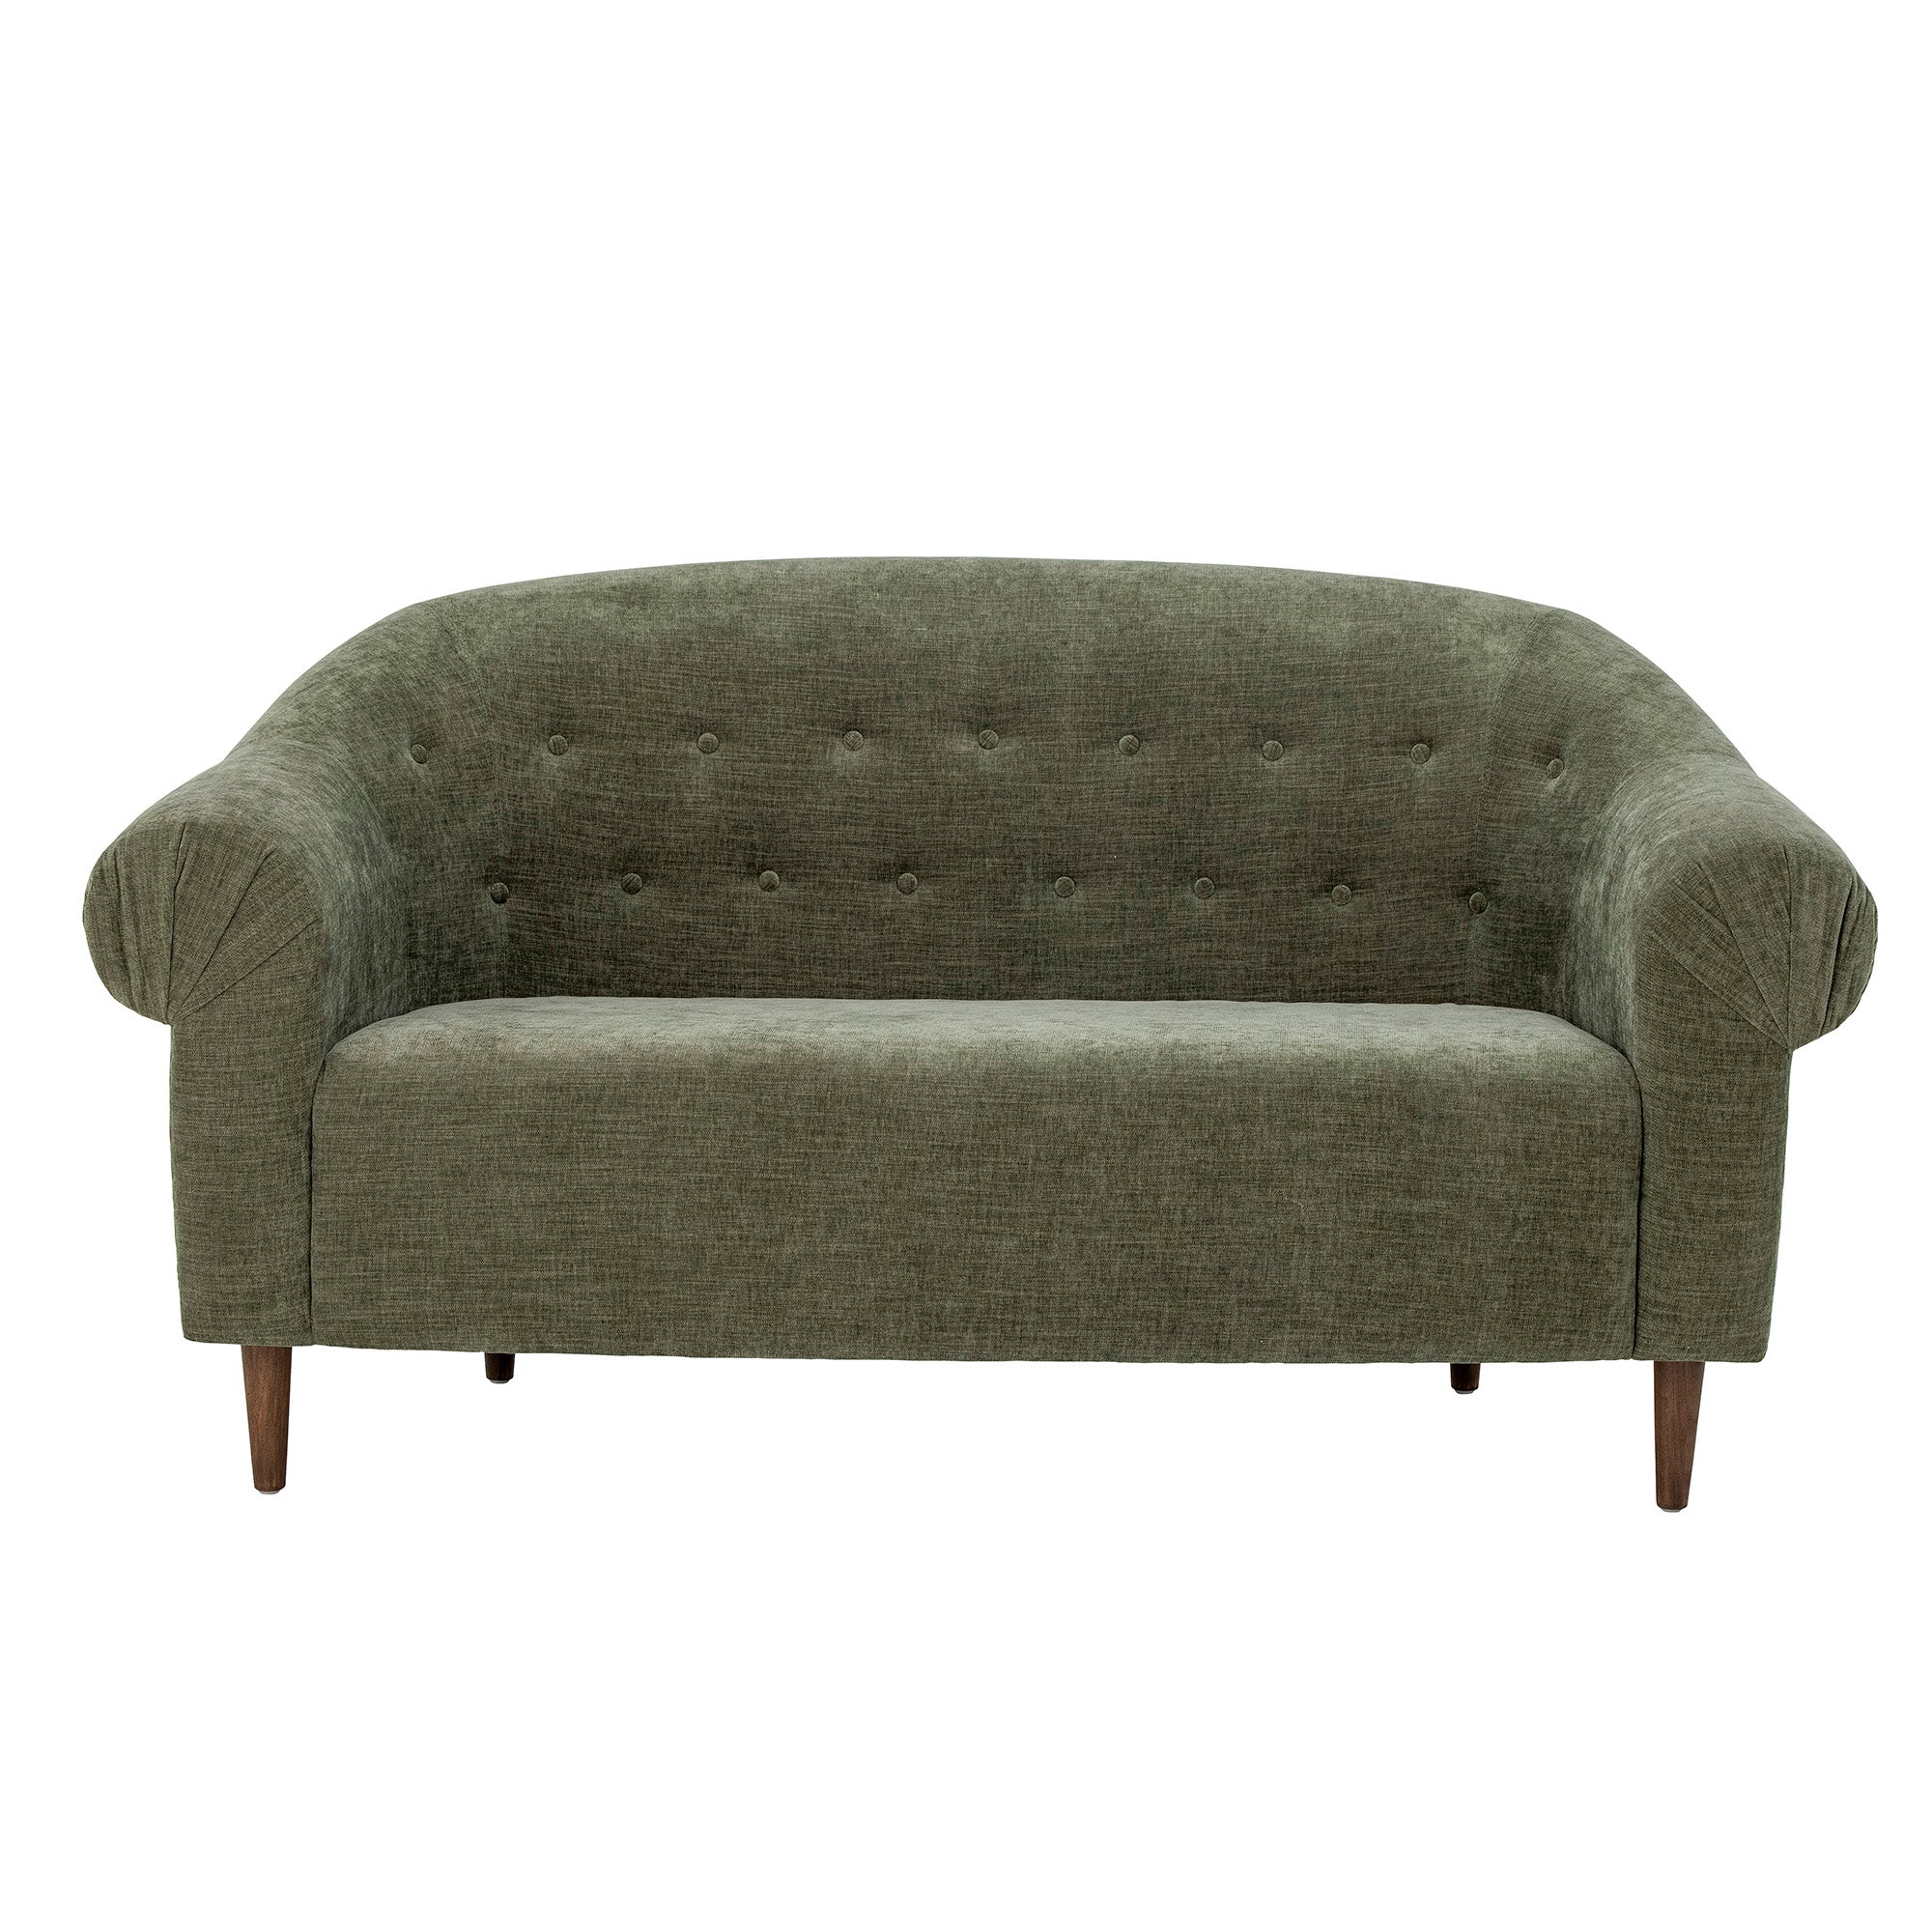 Spencer Sofa, Grün, Polyester in Green präsentiert im Onlineshop von KAQTU Design AG. 2er Sofa ist von Bloomingville